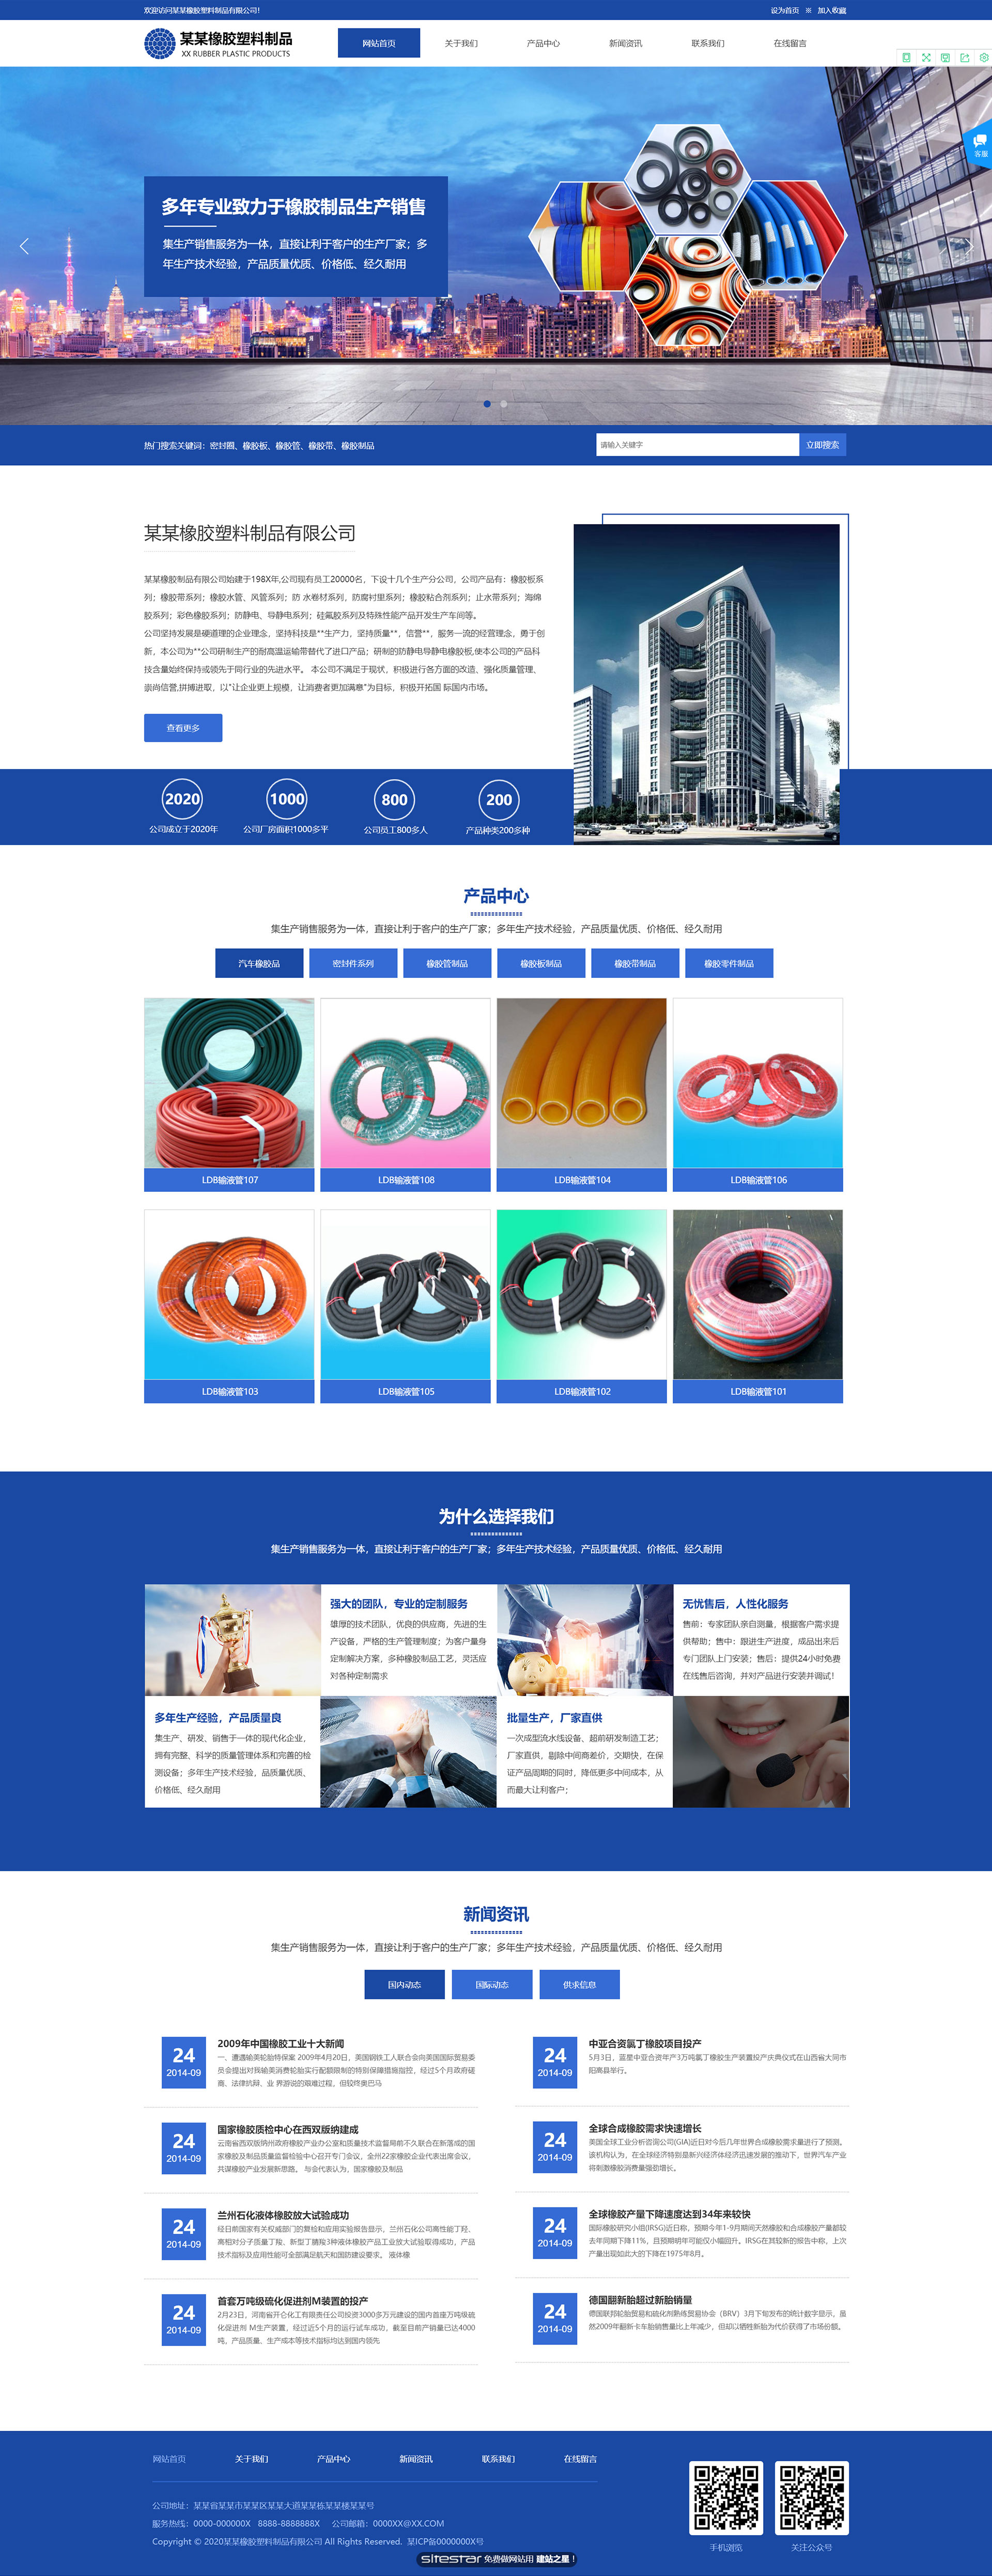 企业网站精美模板-rubber-299